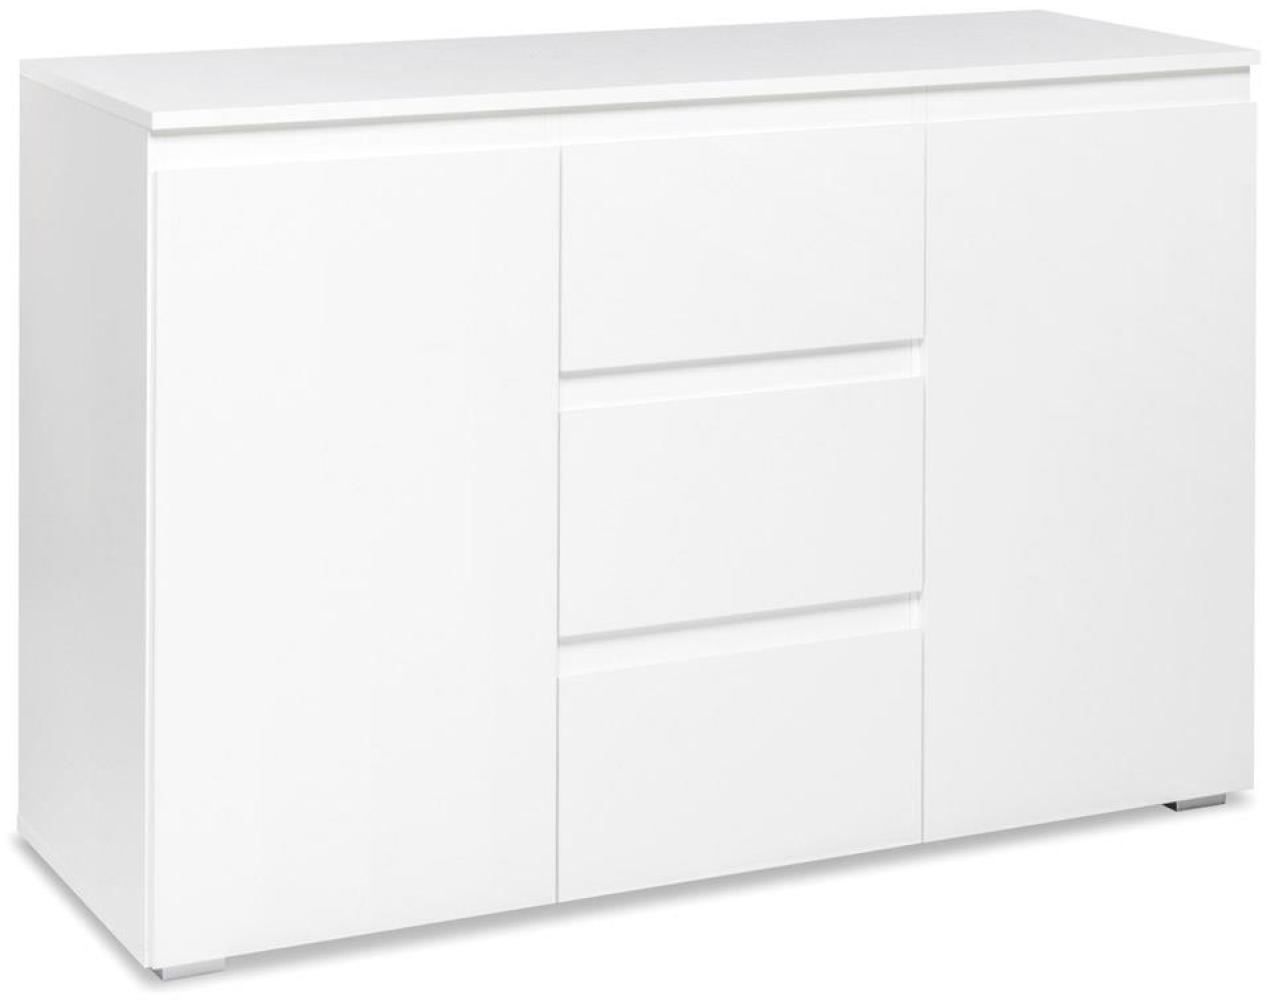 Kommode 'Image 4', weiß, 2 Türen / 3 Schubladen, ca. 120 x 79 x 40 cm Bild 1